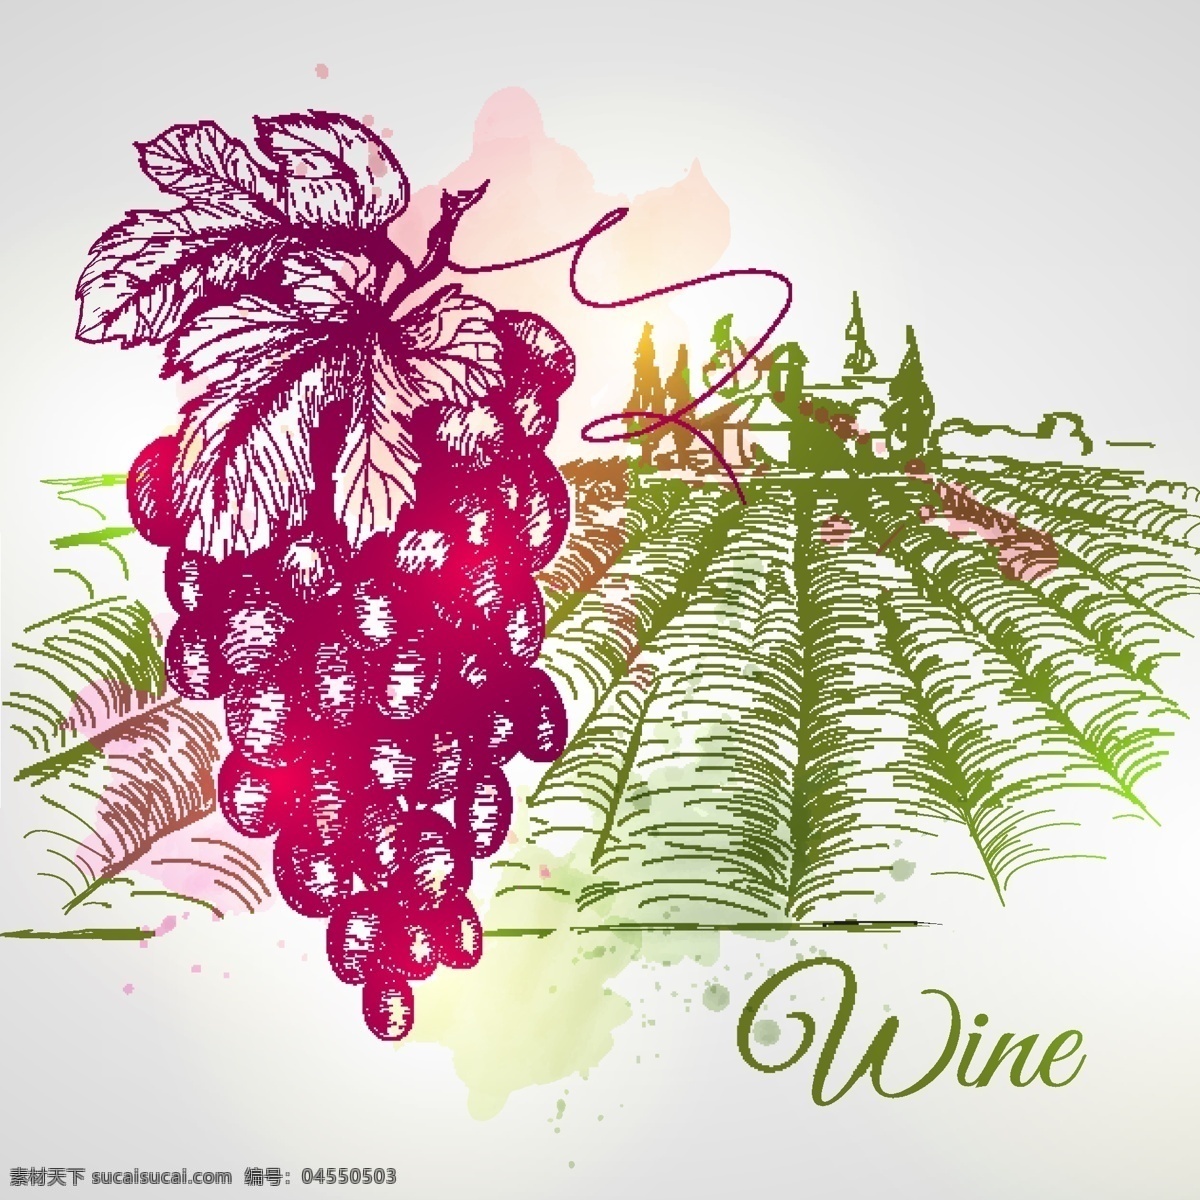 葡萄酒 庄园 手绘 葡萄 矢量图 日常生活